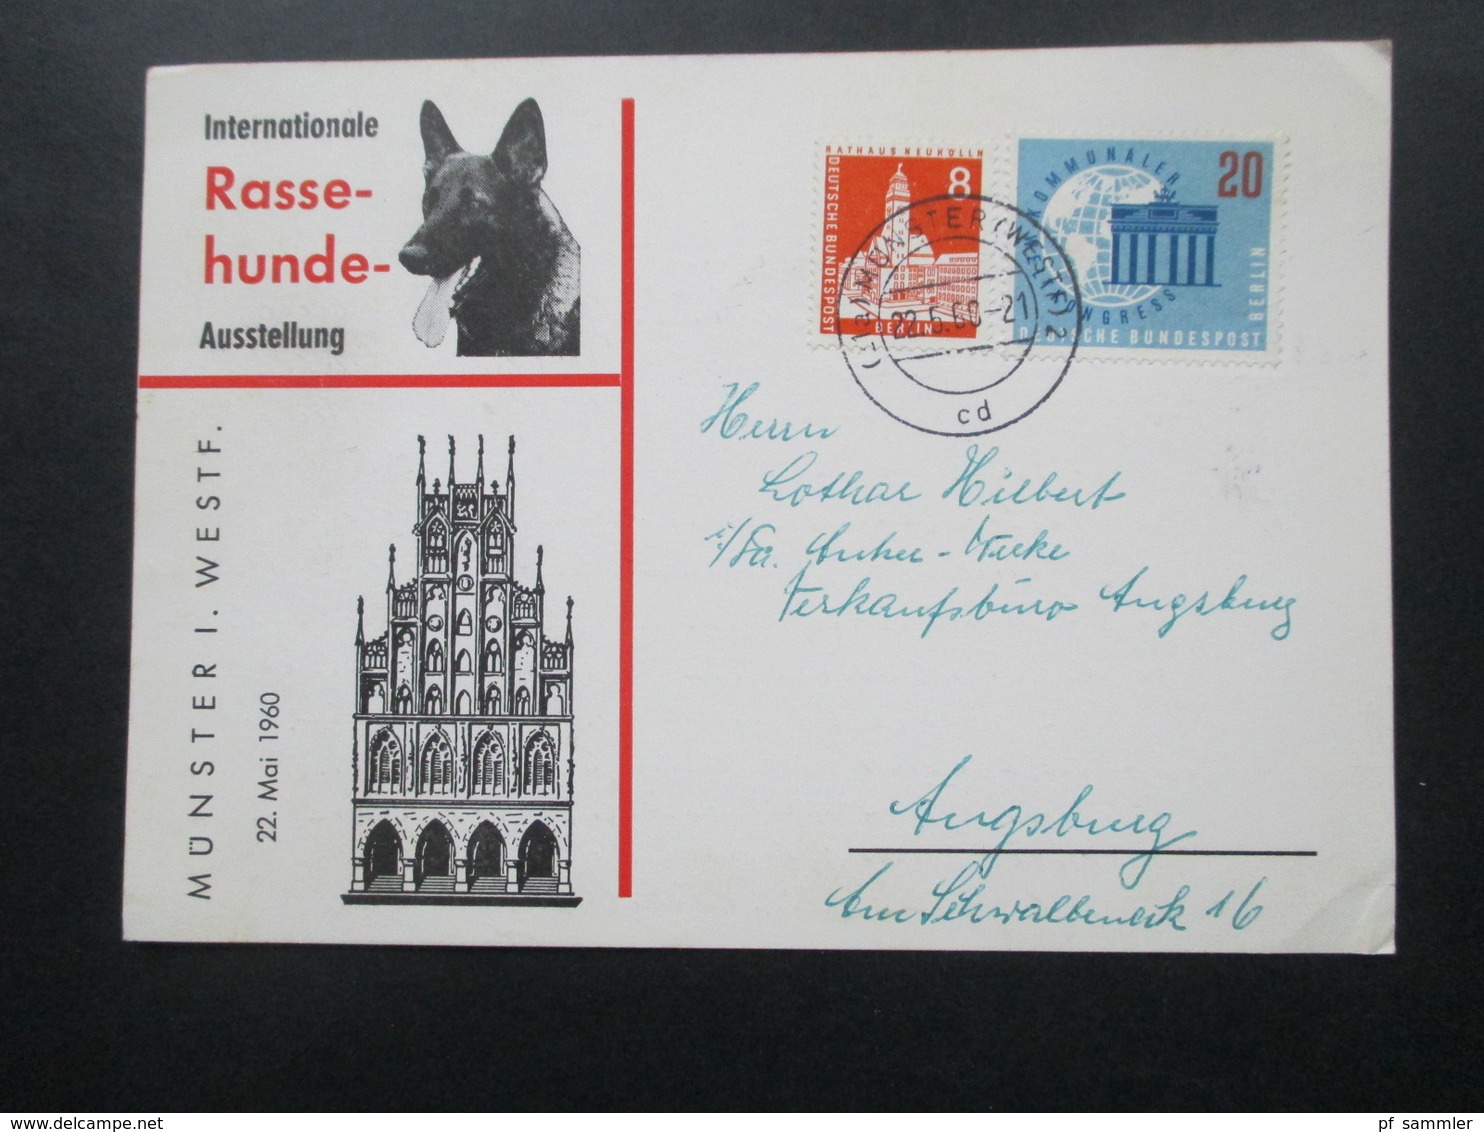 Sonderkarte Internationale Rasse Hunde Ausstellung Münster Westfalen Mit Berlin Marken! Nach Ausgburg Gesendet / Bedarf - Covers & Documents